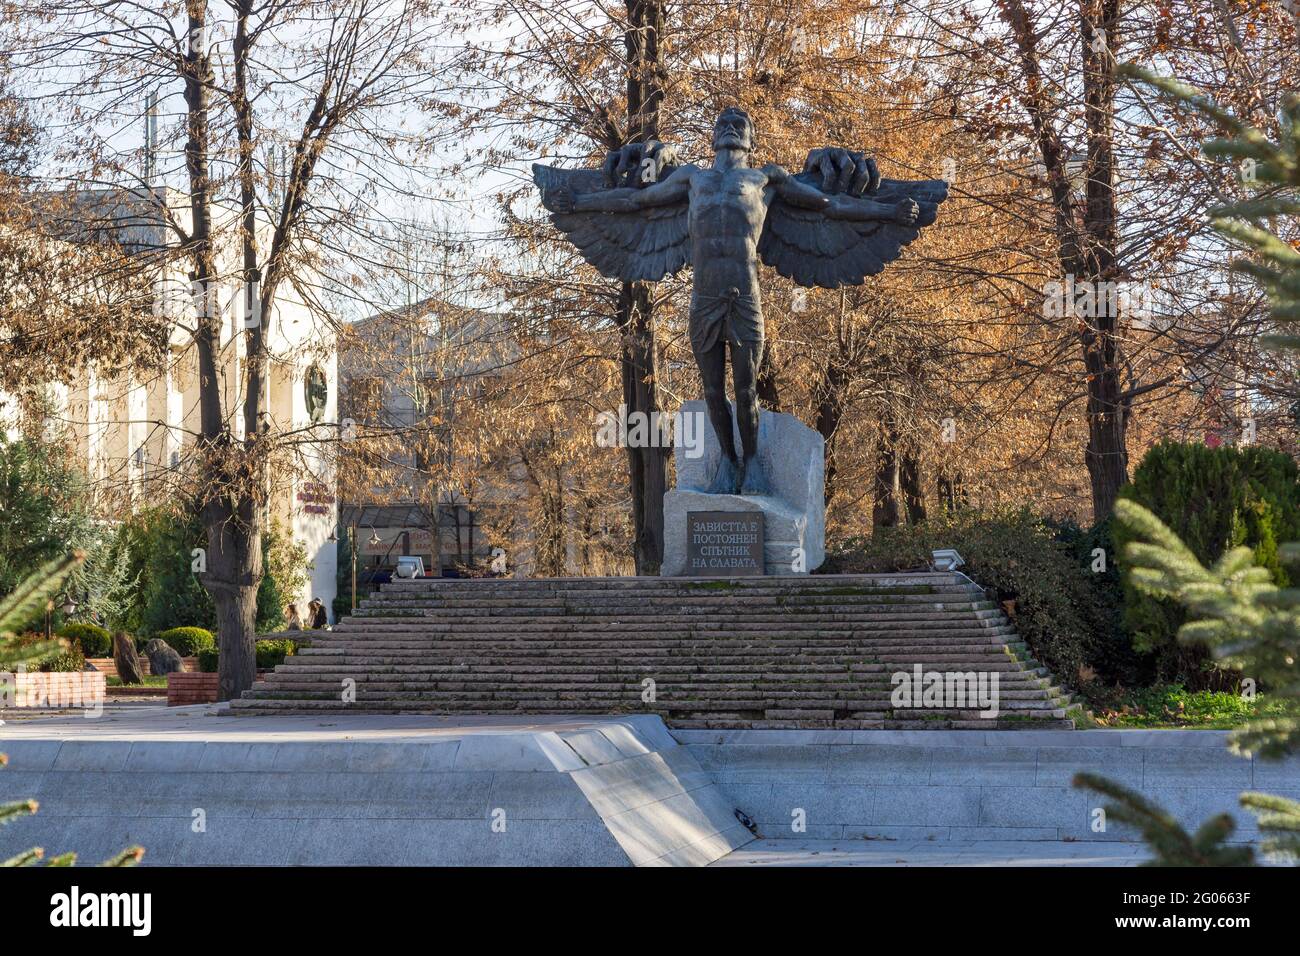 HASKOVO, BULGARIA - 29 DICEMBRE 2020: Monumento all'invidia al centro della città di Haskovo, Bulgaria Foto Stock